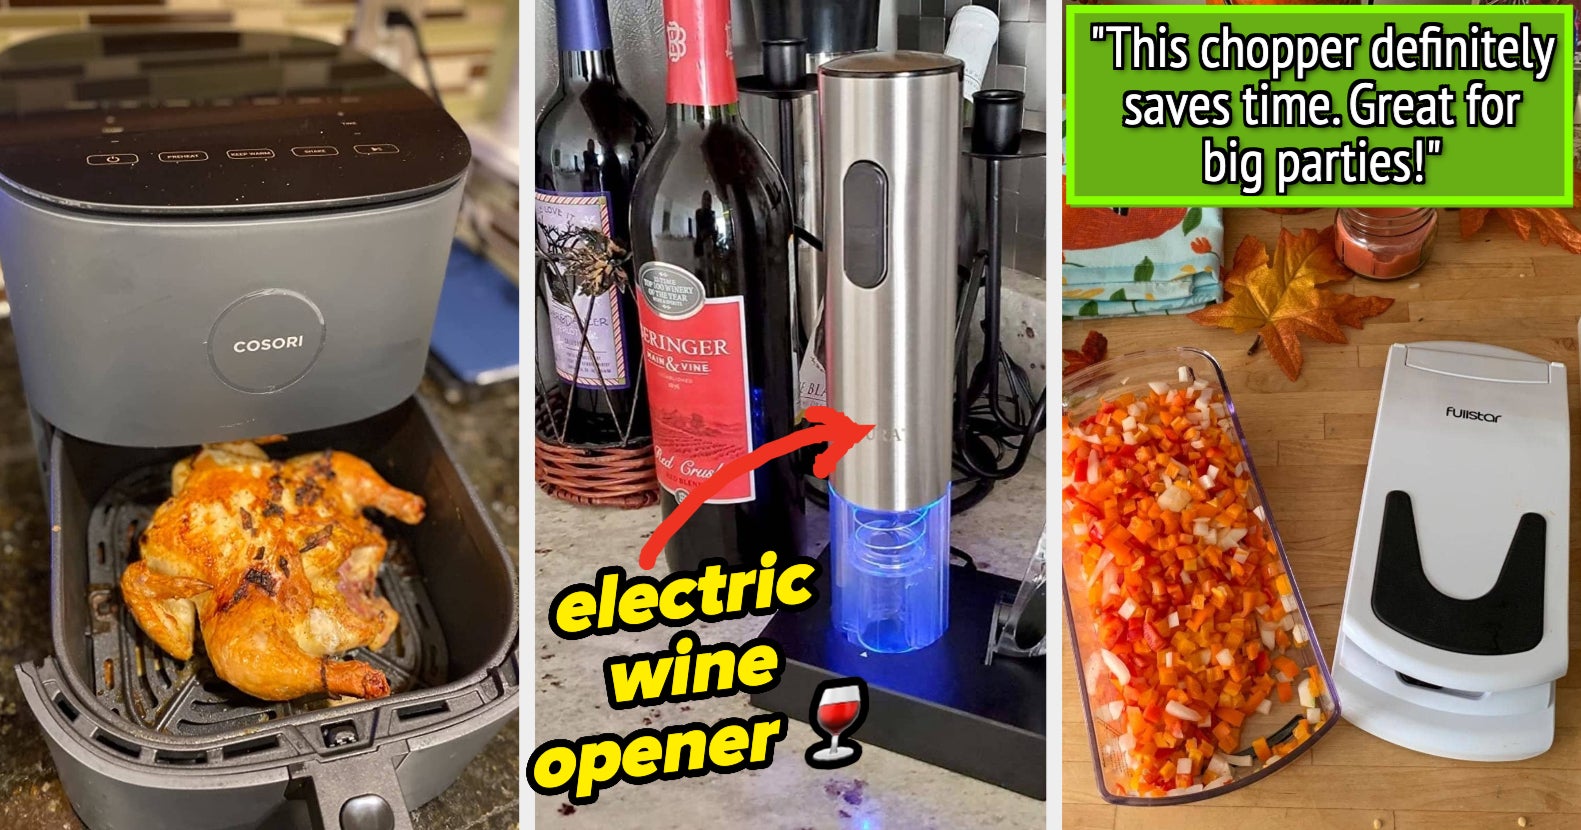 Multifunctional Retractable Bottle Opener Can Opener Adjustable Jar Gripper  Tight Lid Opener Kitchen Gadgets Easy Jar Opener - AliExpress